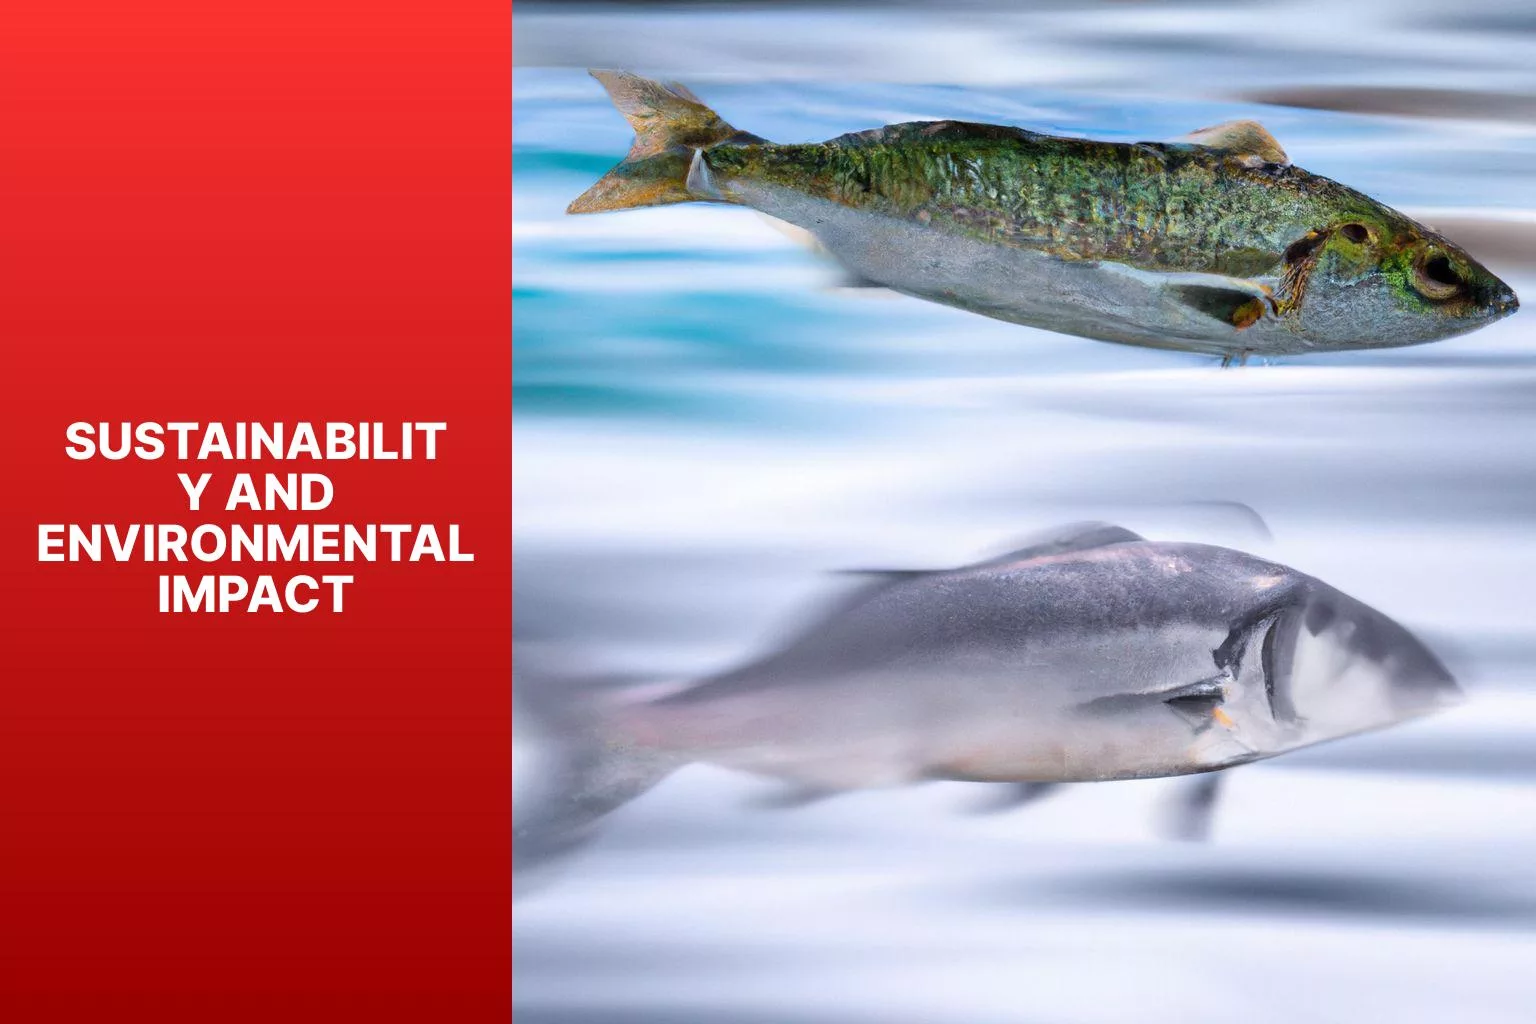 Sustainability and Environmental Impact - swai fish vs pollock 